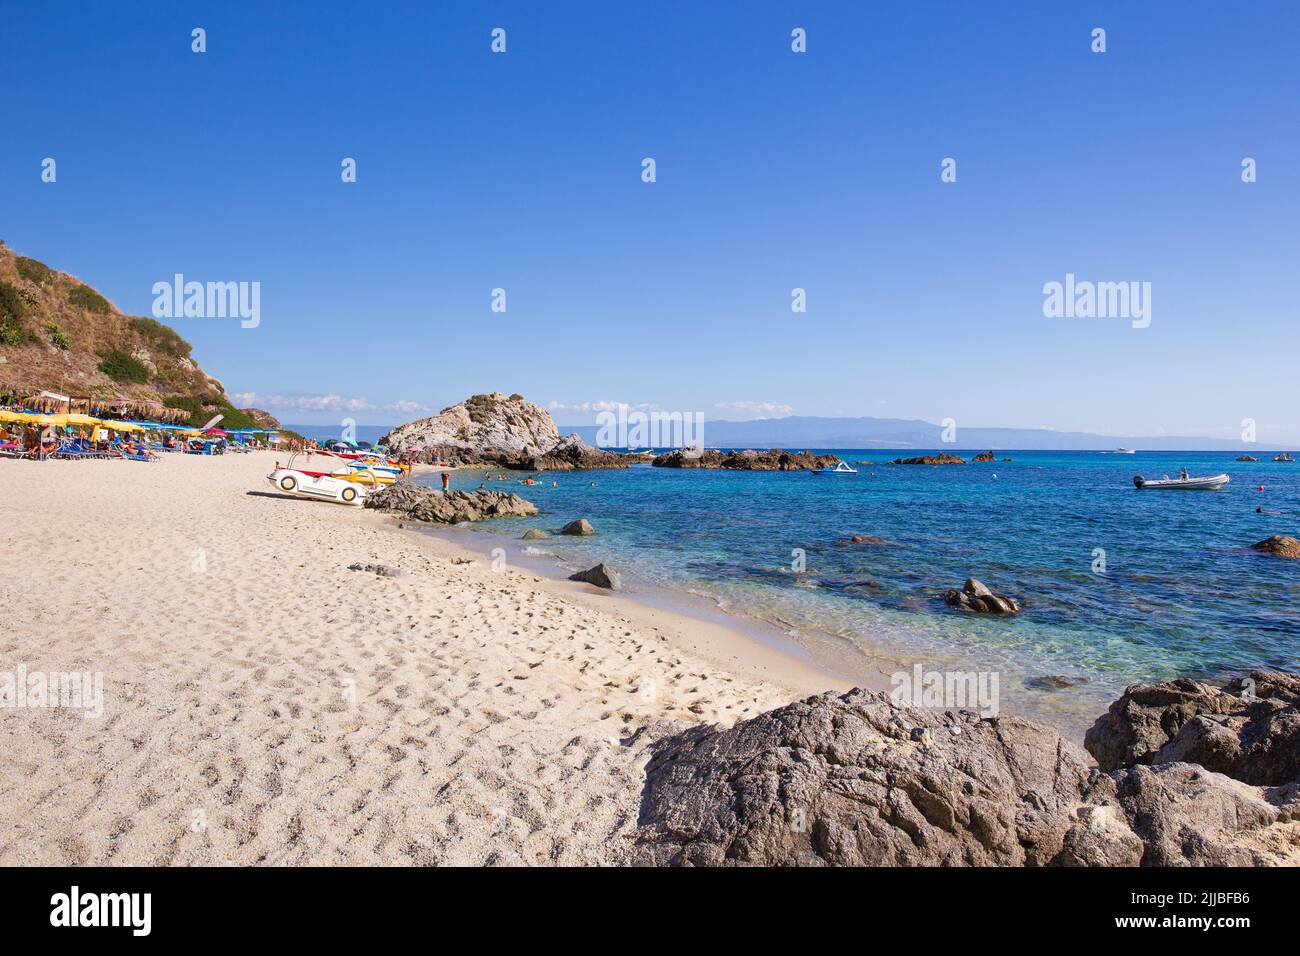 Rocky and sandy beach at Capo Vaticano, Calabria, Italy Stock Photo